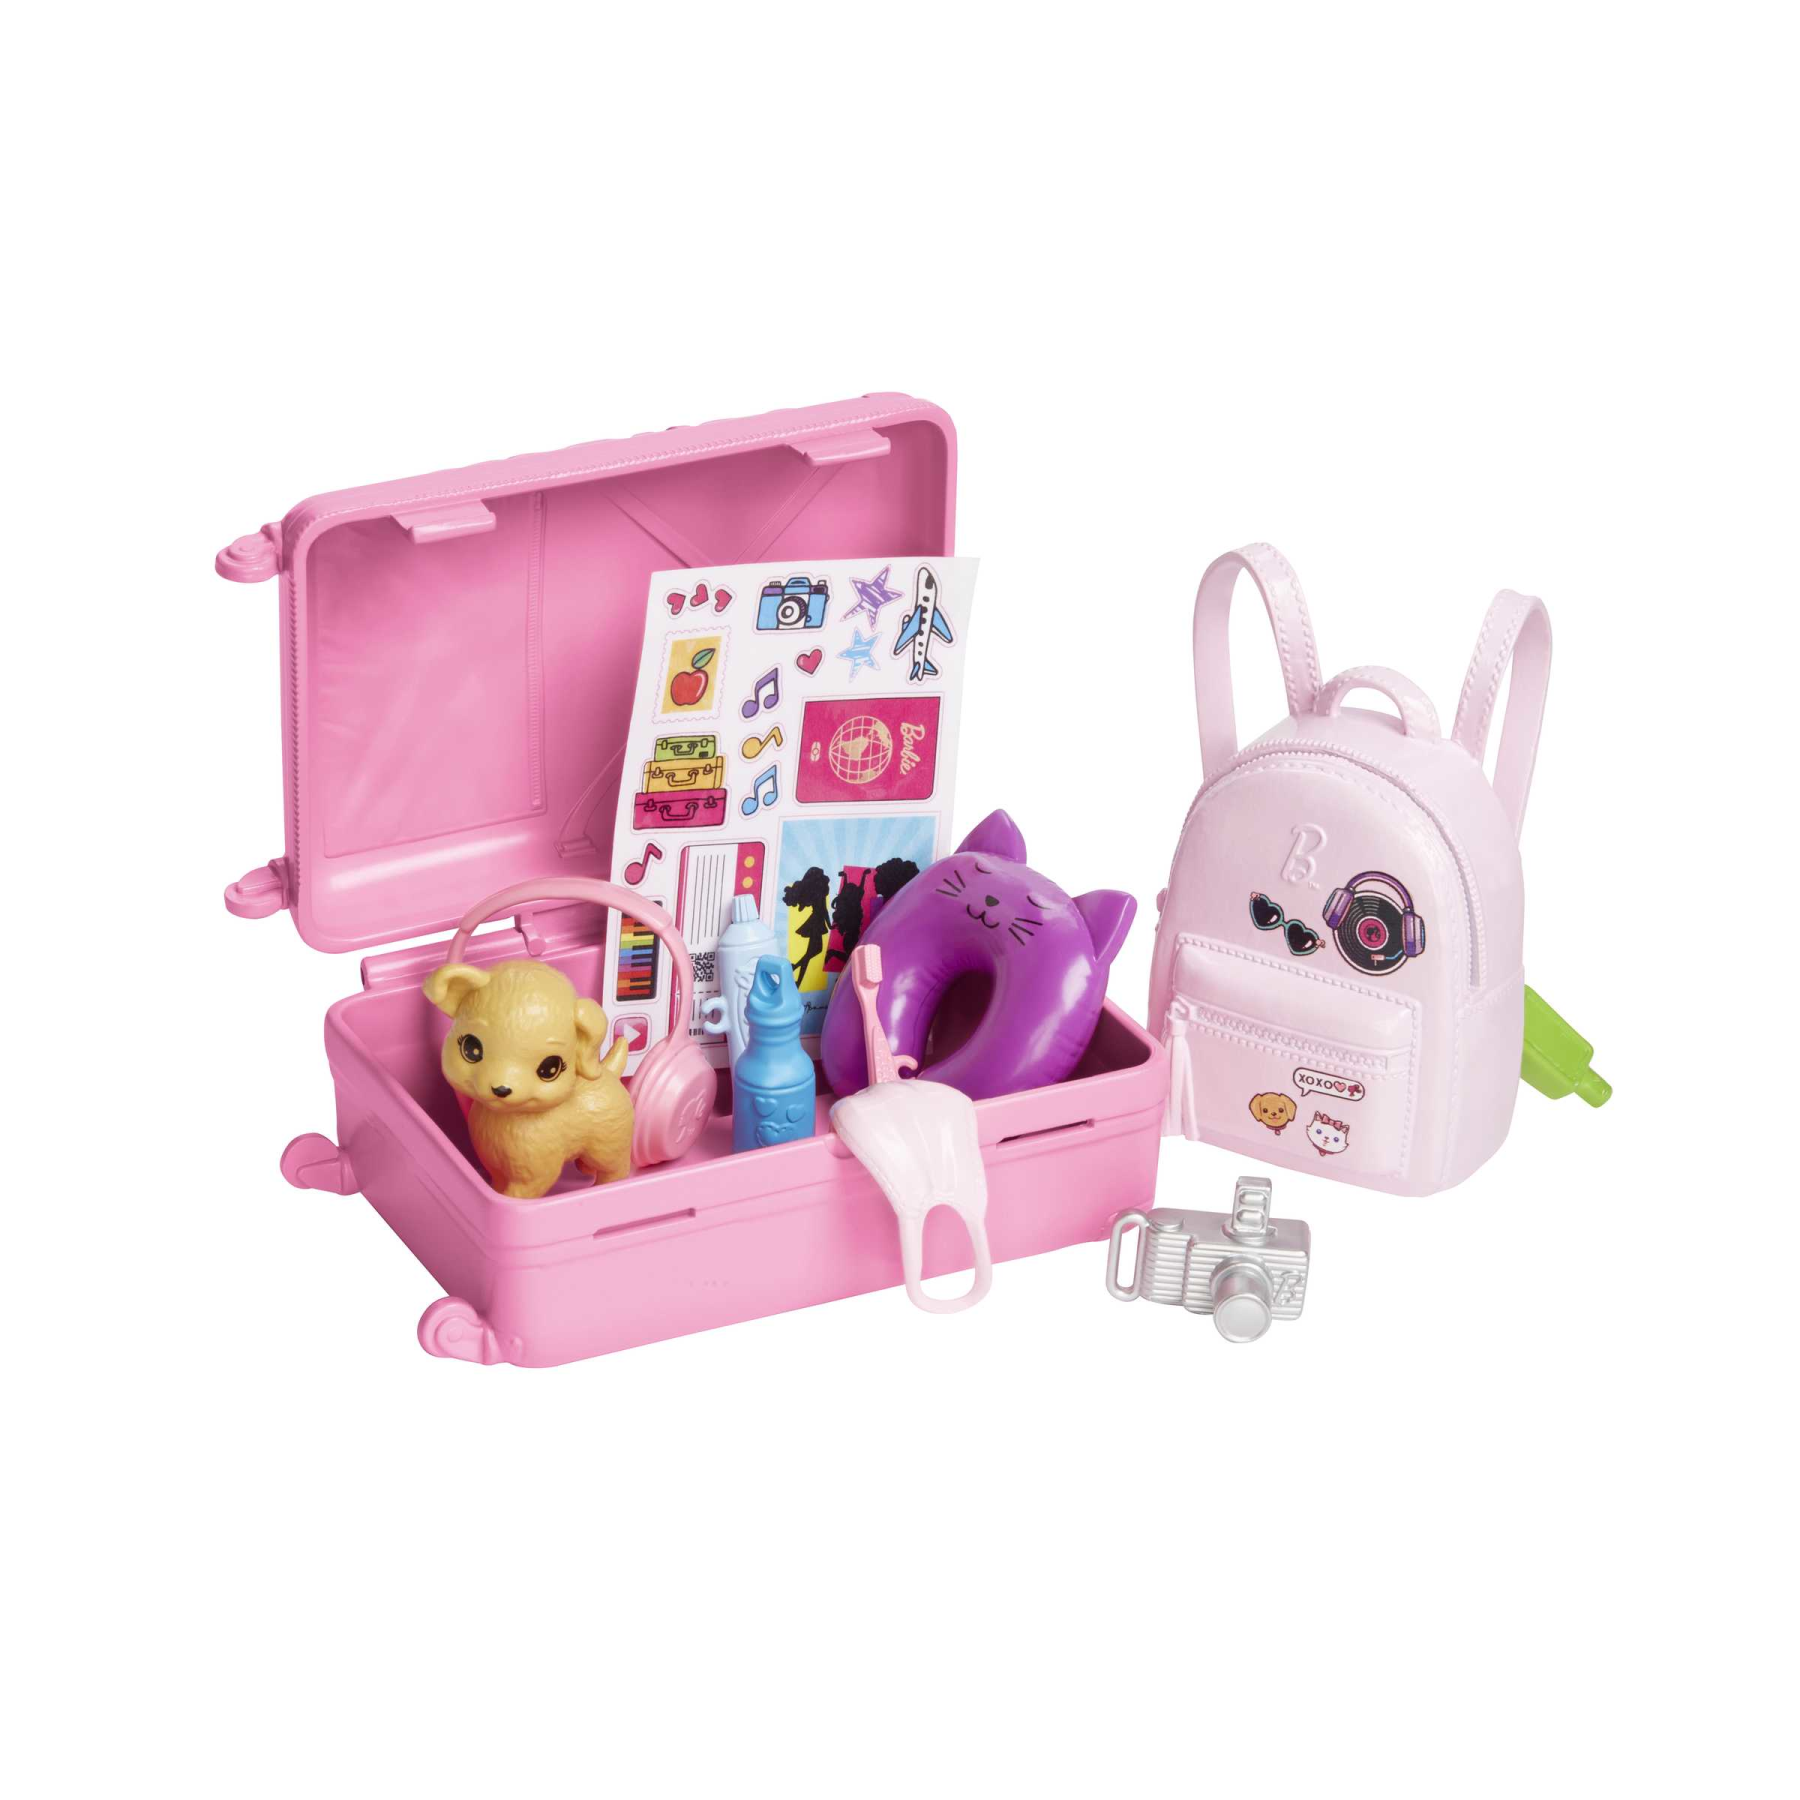 Barbie - set da viaggio "malibu", bambola con cagnolino e valigie con rotelle incluse, 10+ accessori, giocattolo per bambini, 3+ anni, hjy18 - Barbie